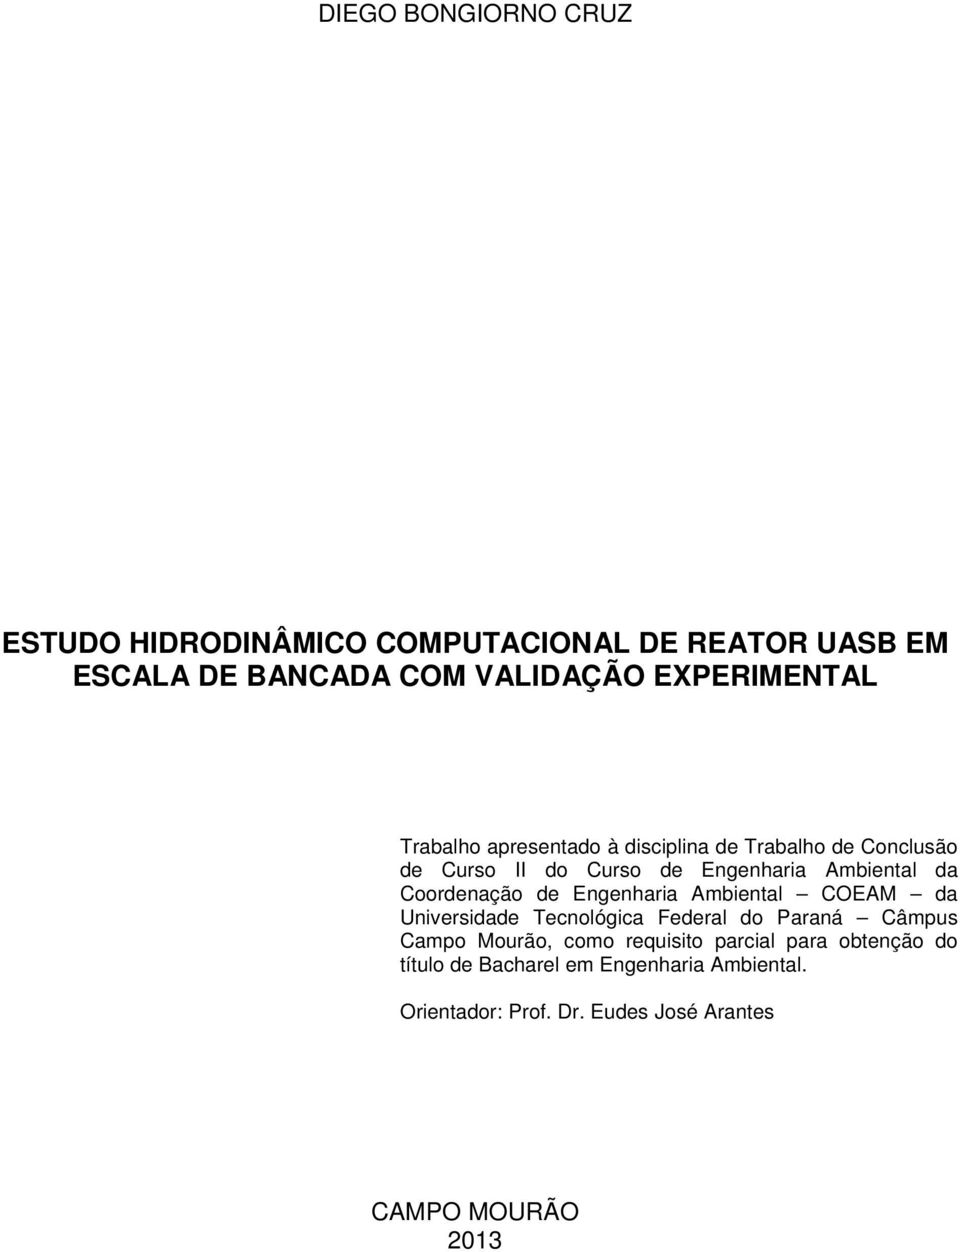 Coordenação de Engenharia Ambiental COEAM da Universidade Tecnológica Federal do Paraná Câmpus Campo Mourão, como